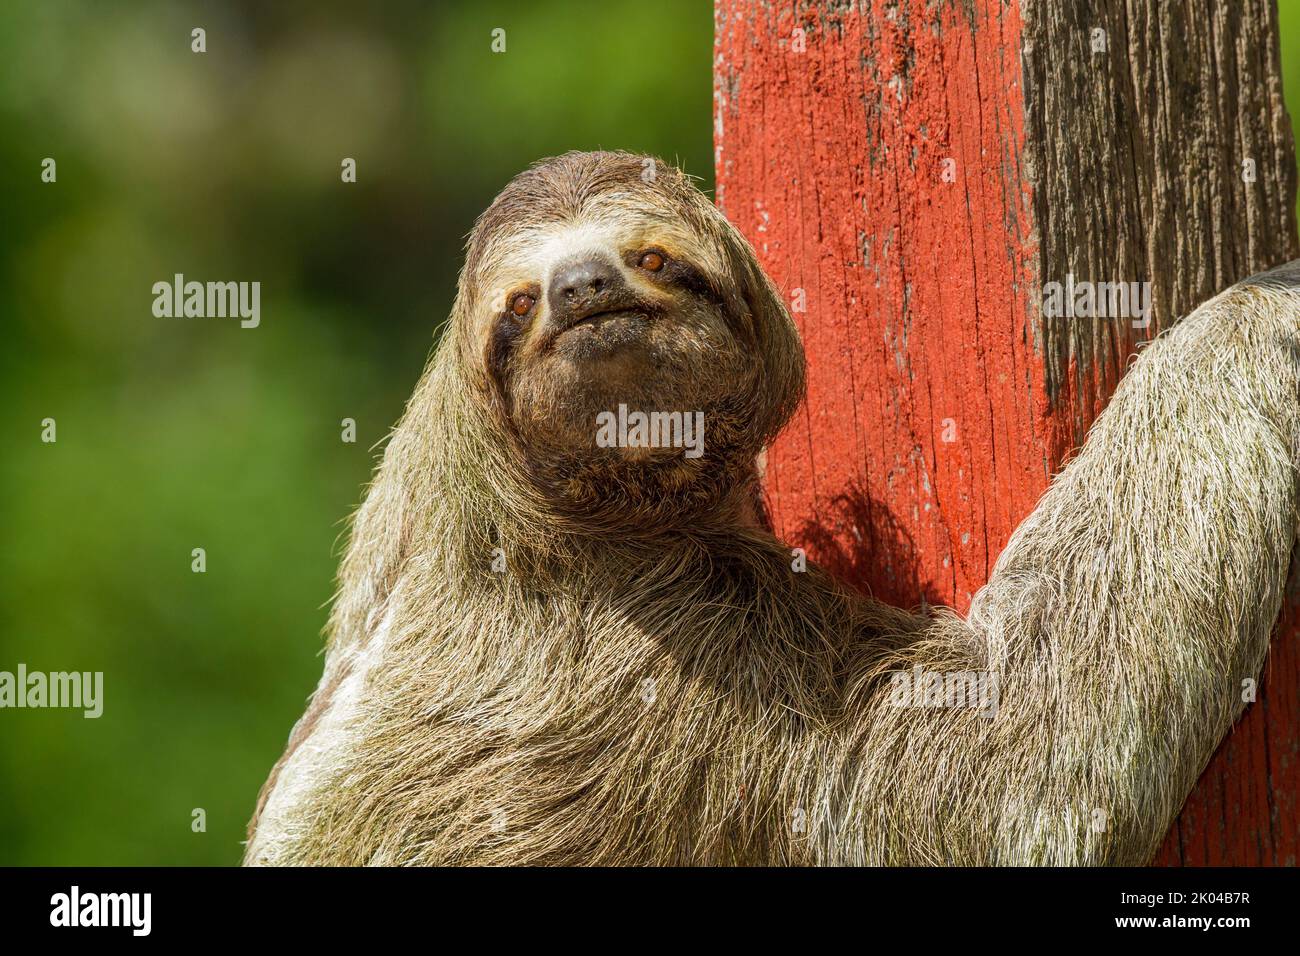 Sloth a tre punte (Bradypus infuscatus), primo piano, salendo lungo una recinzione per andare da un albero all'altro Foto Stock